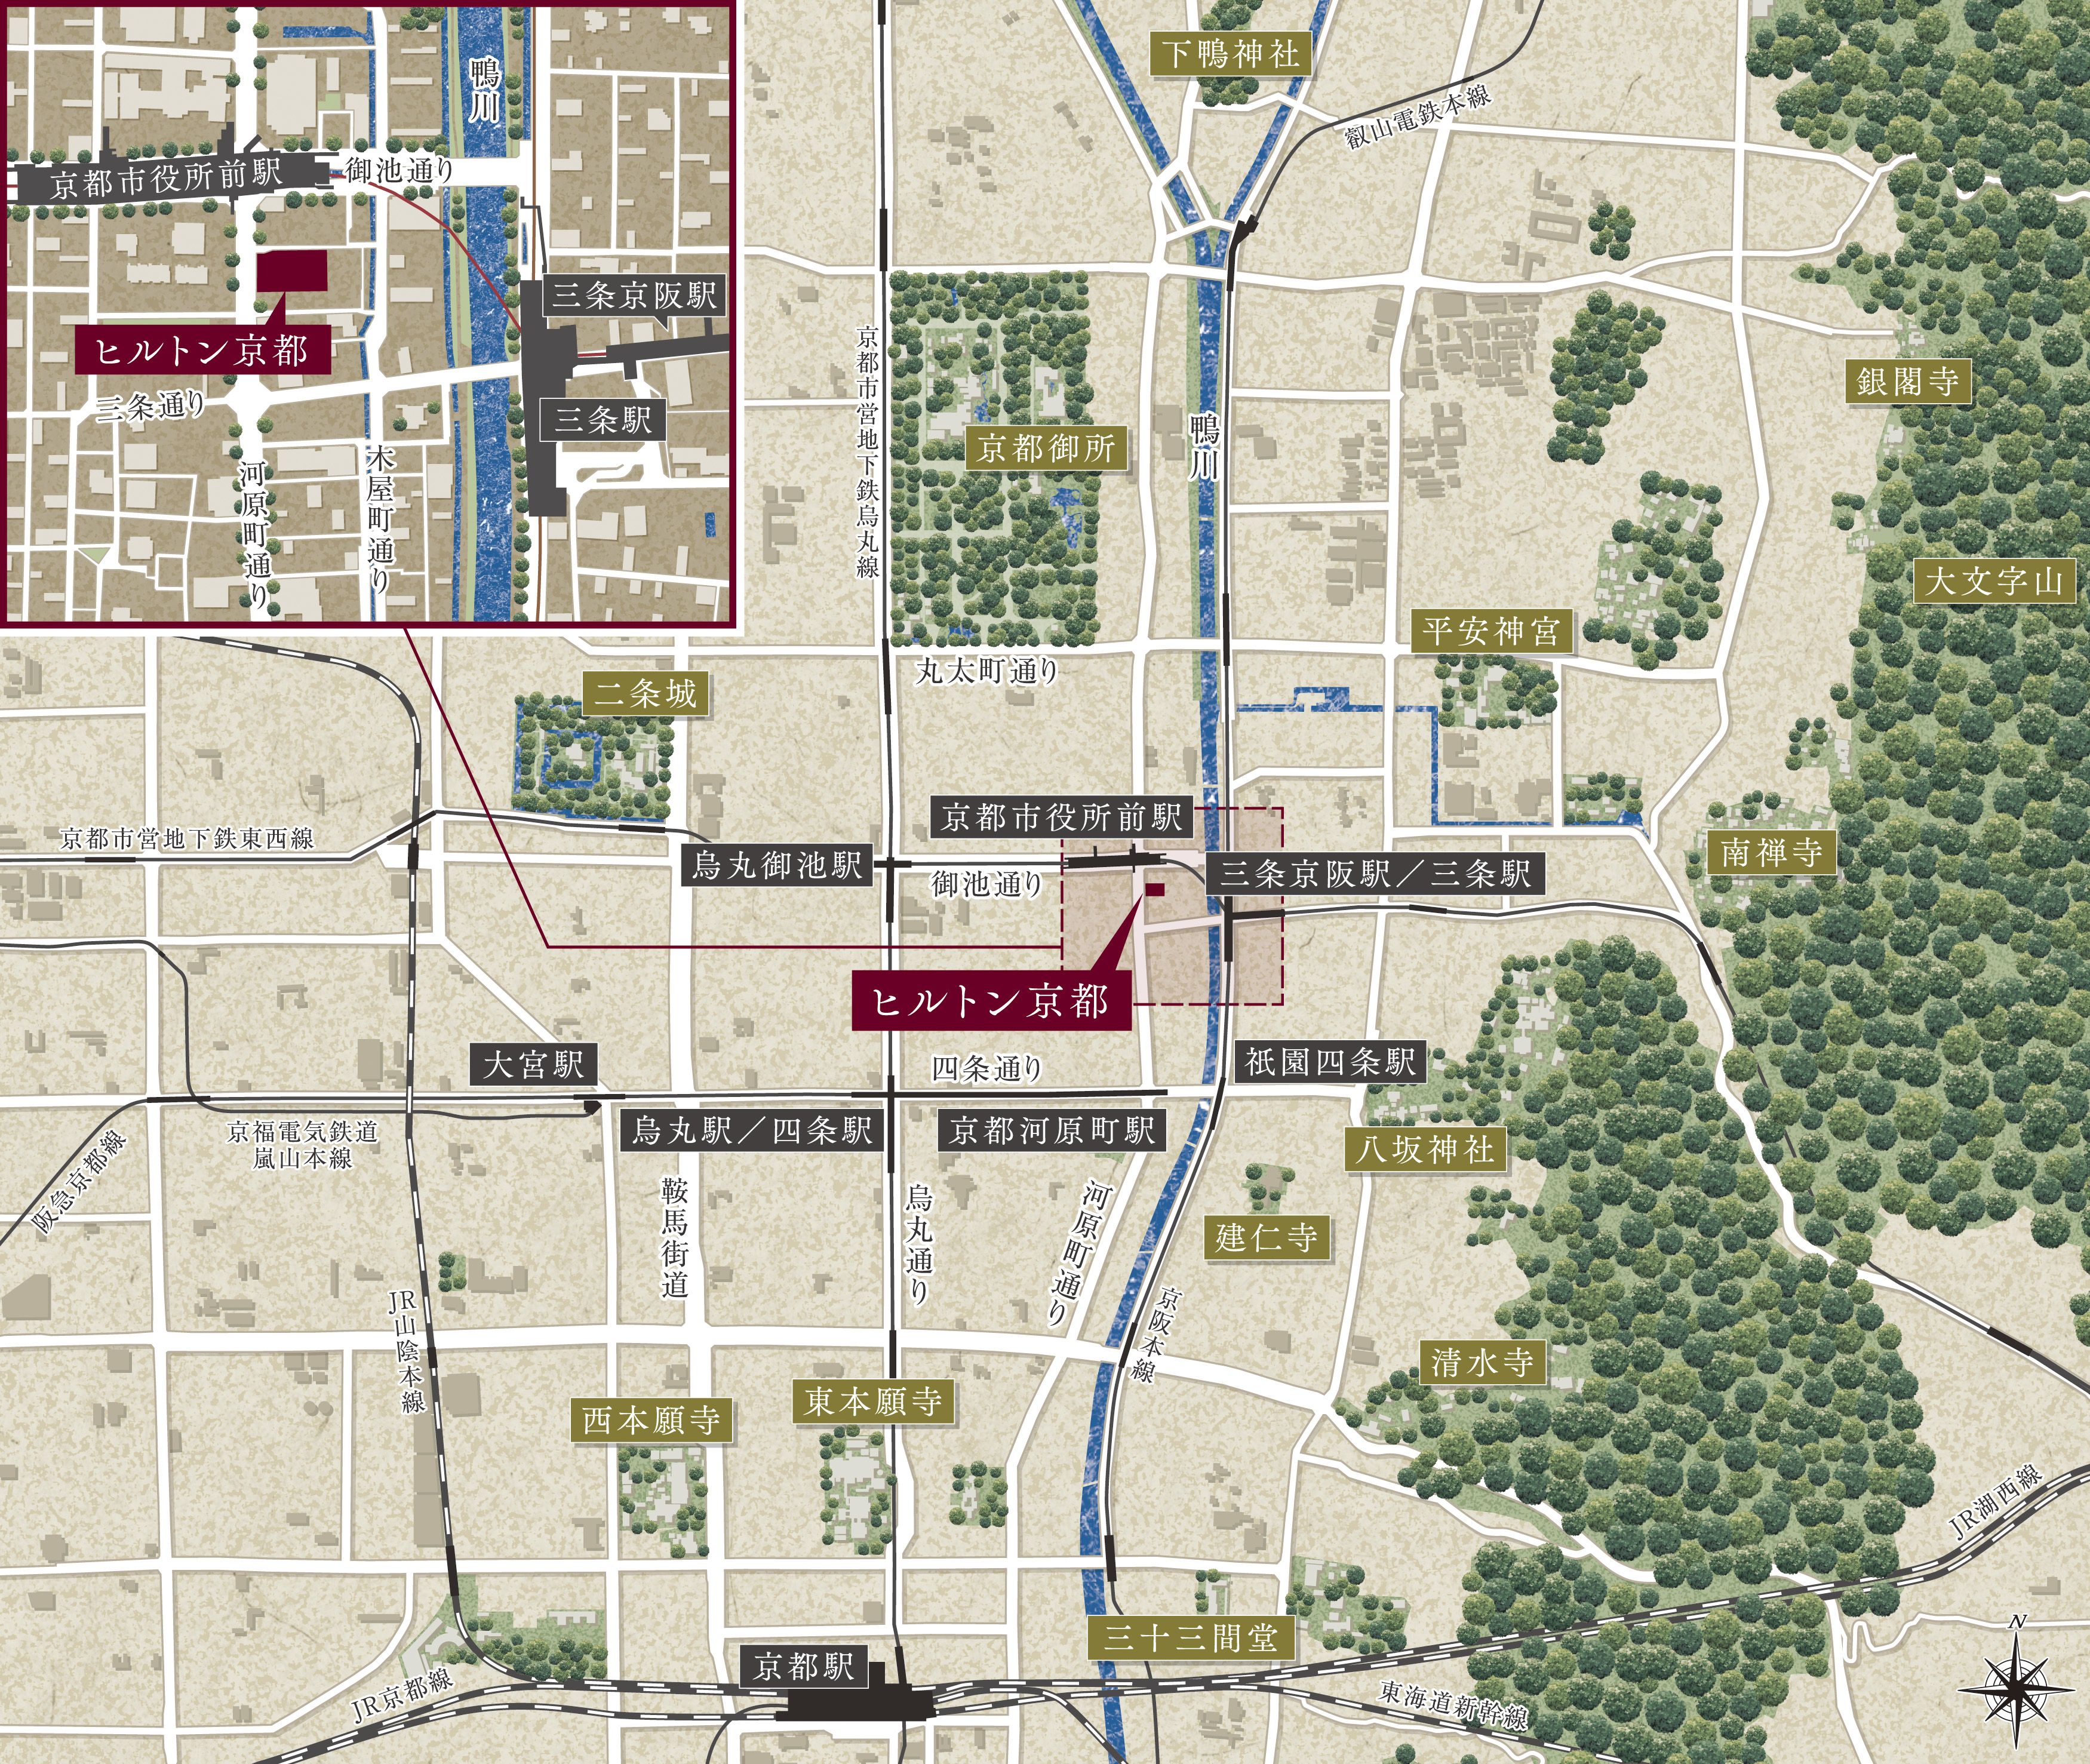 計画地は、京阪「三条」駅や市営地下鉄「京都市役所前」駅など複数の路線が利用できる好立地（出典：ヒルトン プレスリリース）